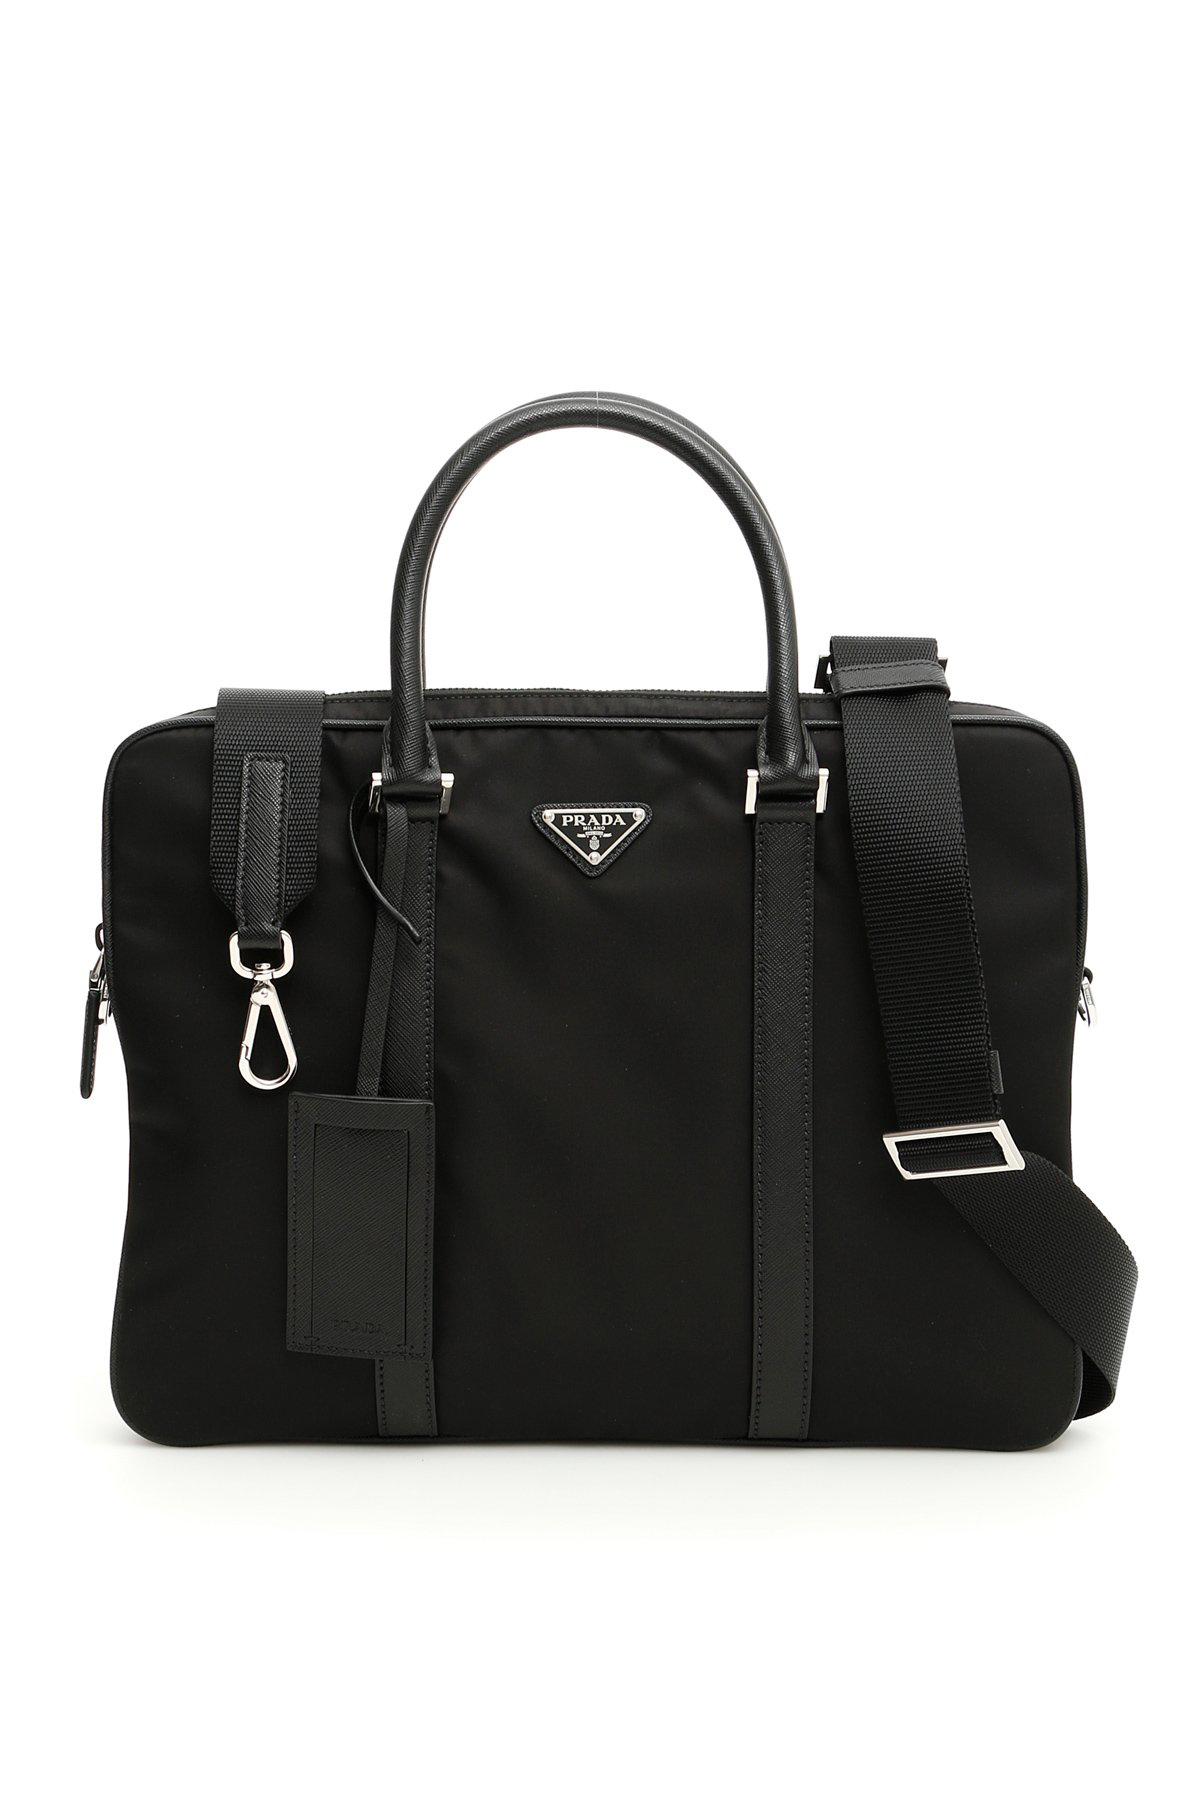 Prada Top Handle Laptop Bag In Black | ModeSens